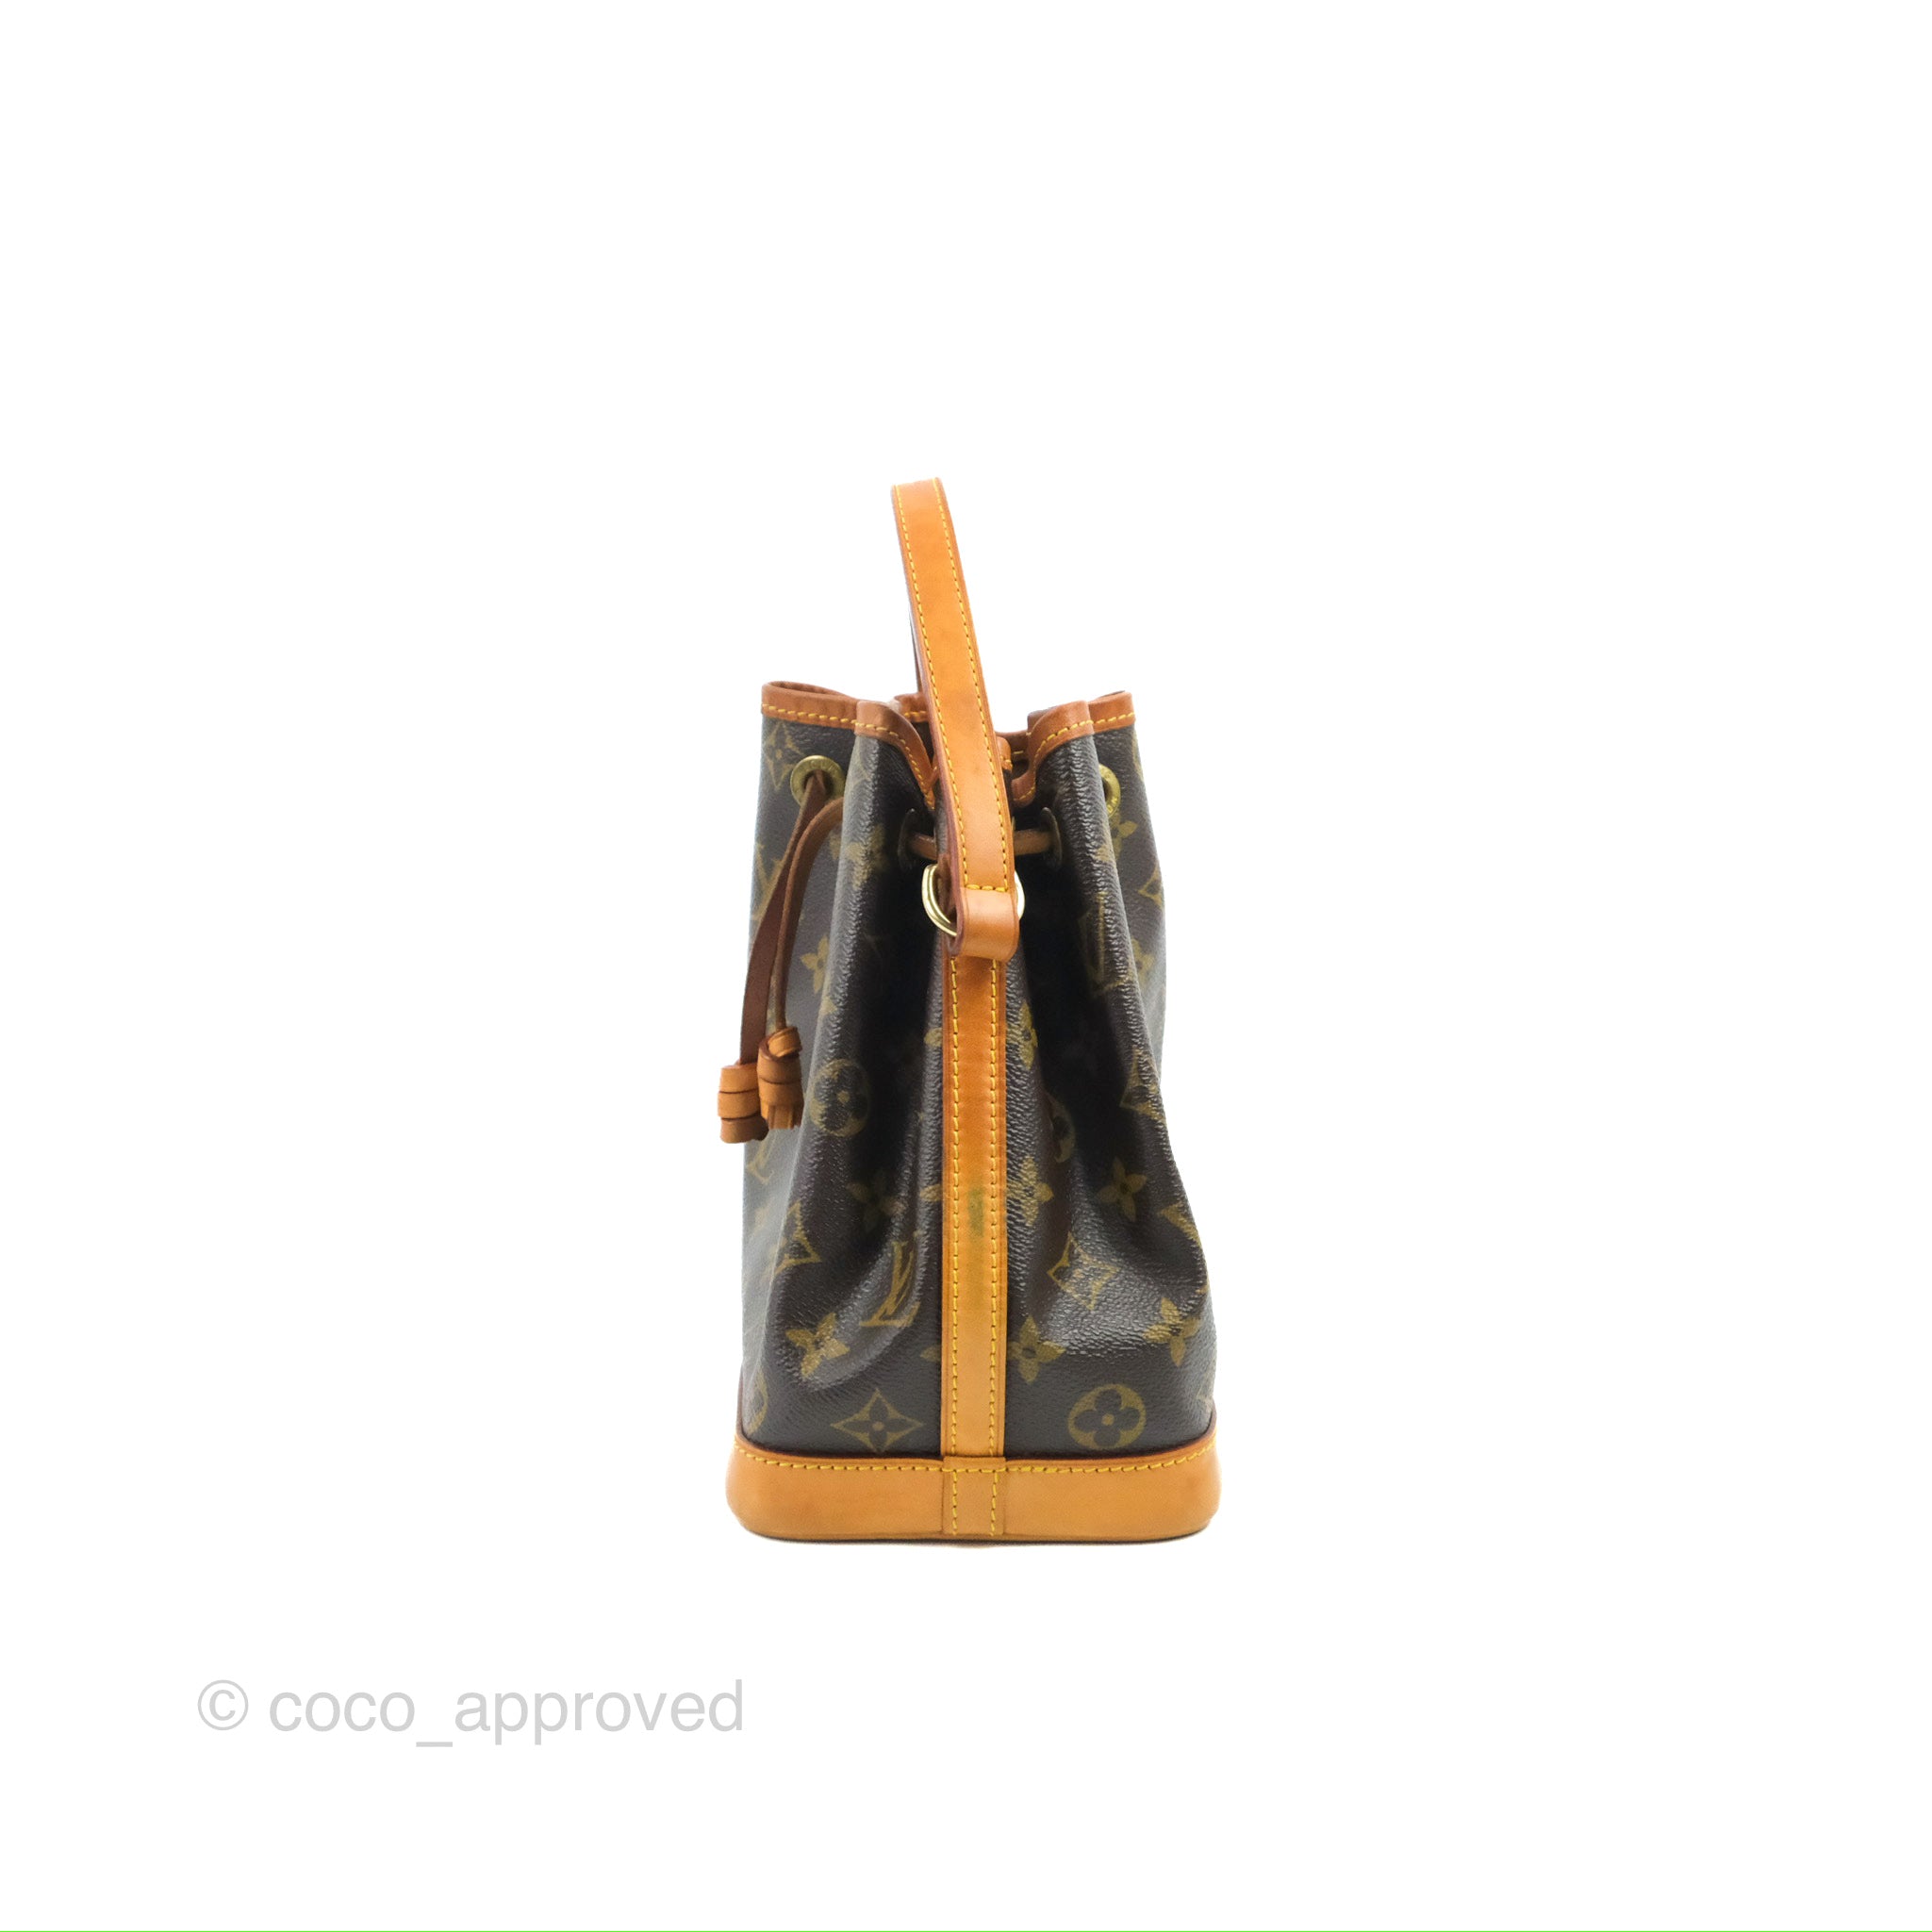 Nano noé cloth mini bag Louis Vuitton Brown in Cloth - 36058009